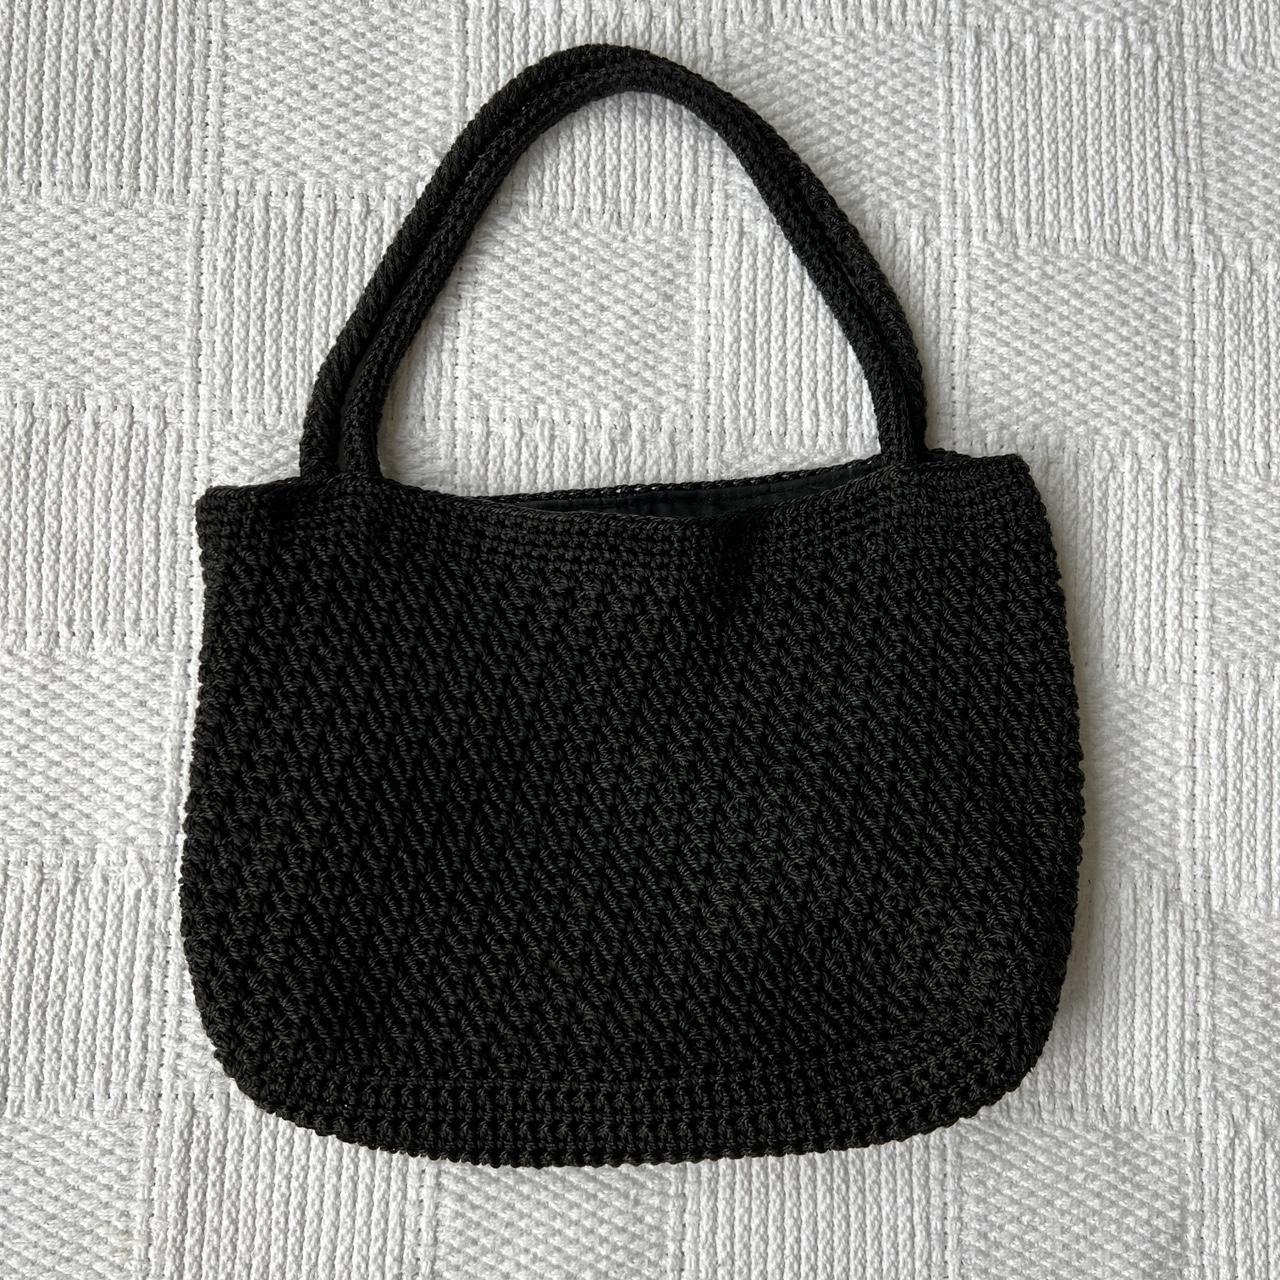 1960s Black Crochet Purse Handbag - Gem